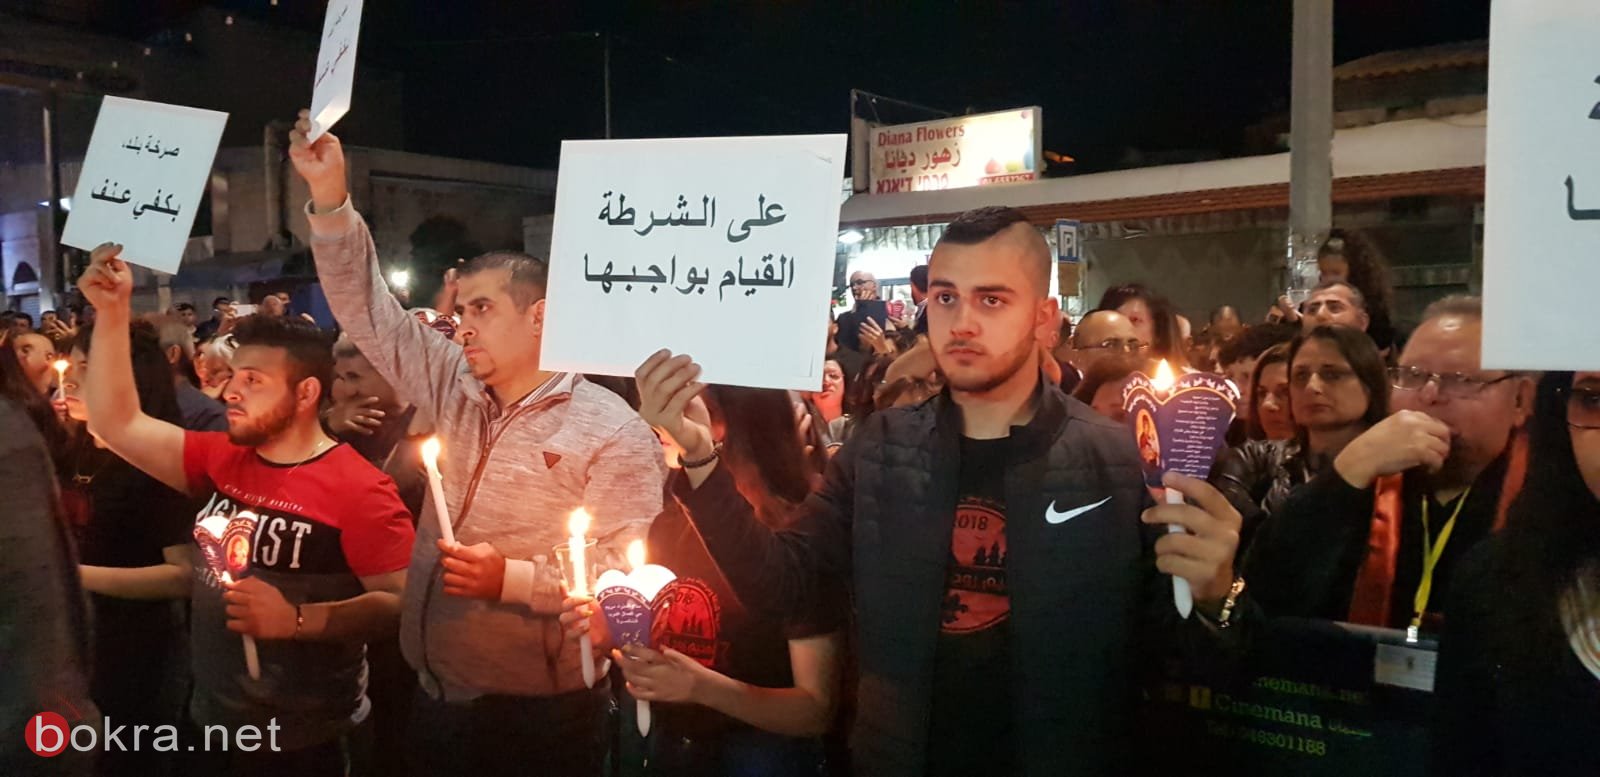 الناصرة: وقفة صامتة لذكرى ضحية العنف والجريمة  توفيق الزهر -3